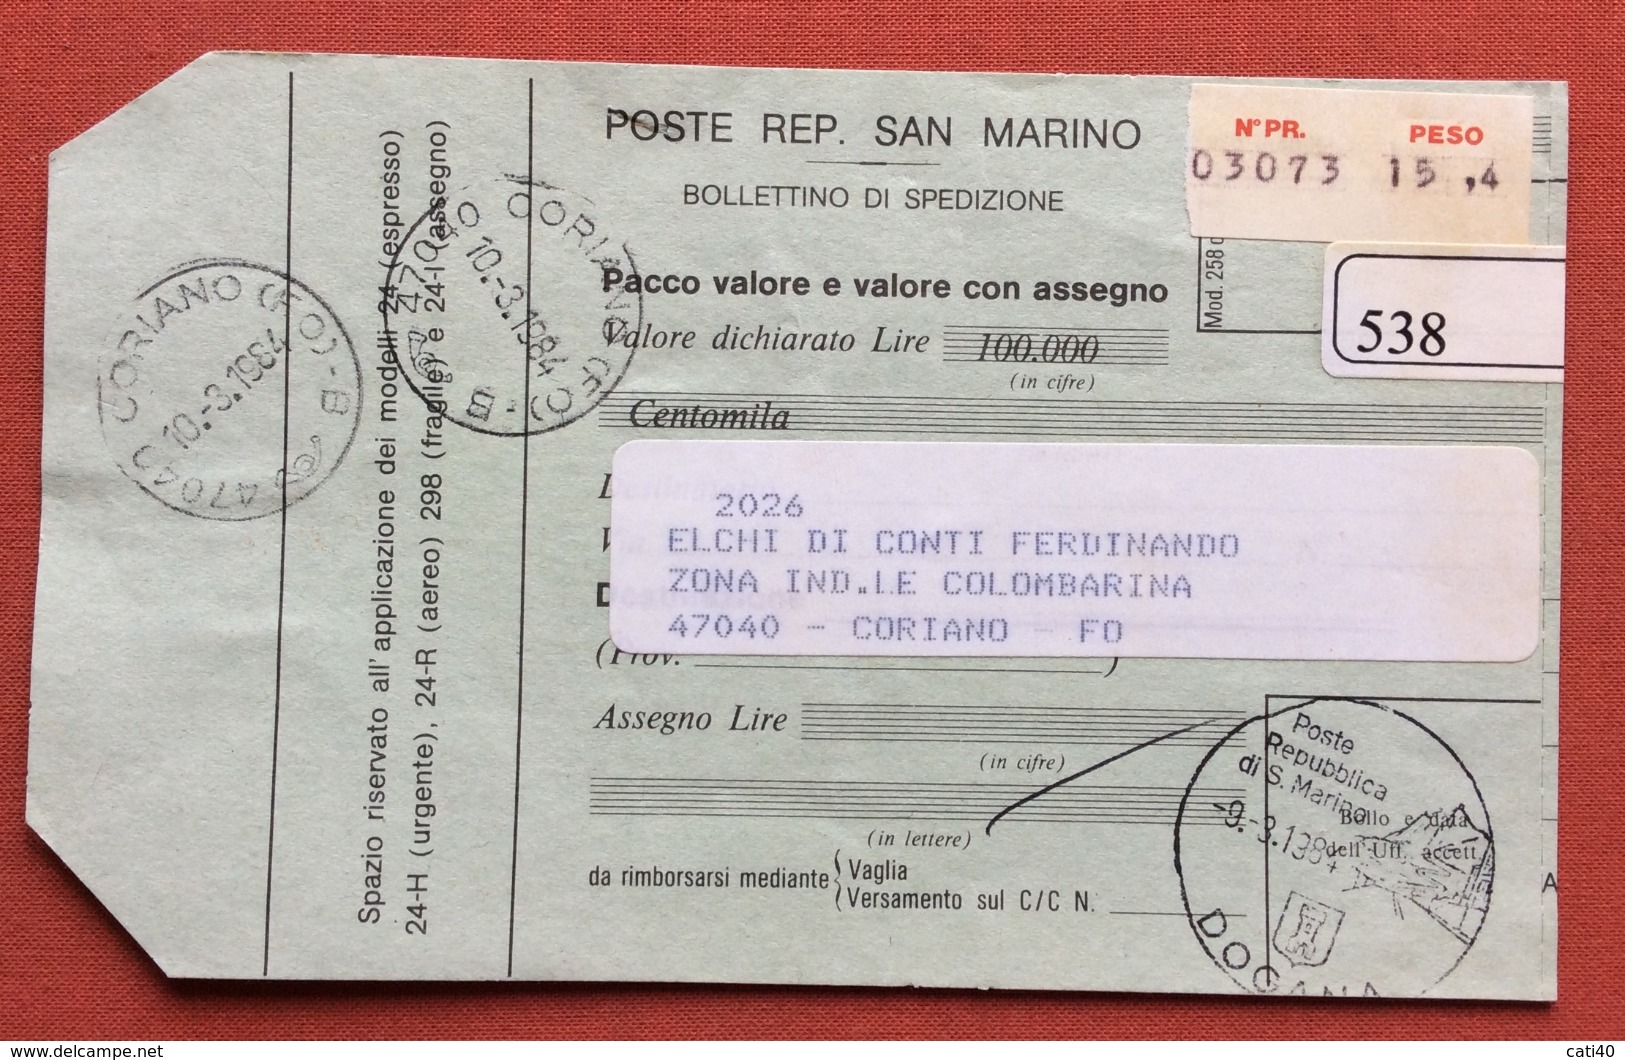 SAN MARINO BOLLETTINO SPEDIZIONE PACCO  VALORE CON ASSEGNO CON L.1000  ANNULLO SAN MARINO DOGANA 9/3/1984 - Errors, Freaks & Oddities (EFO)